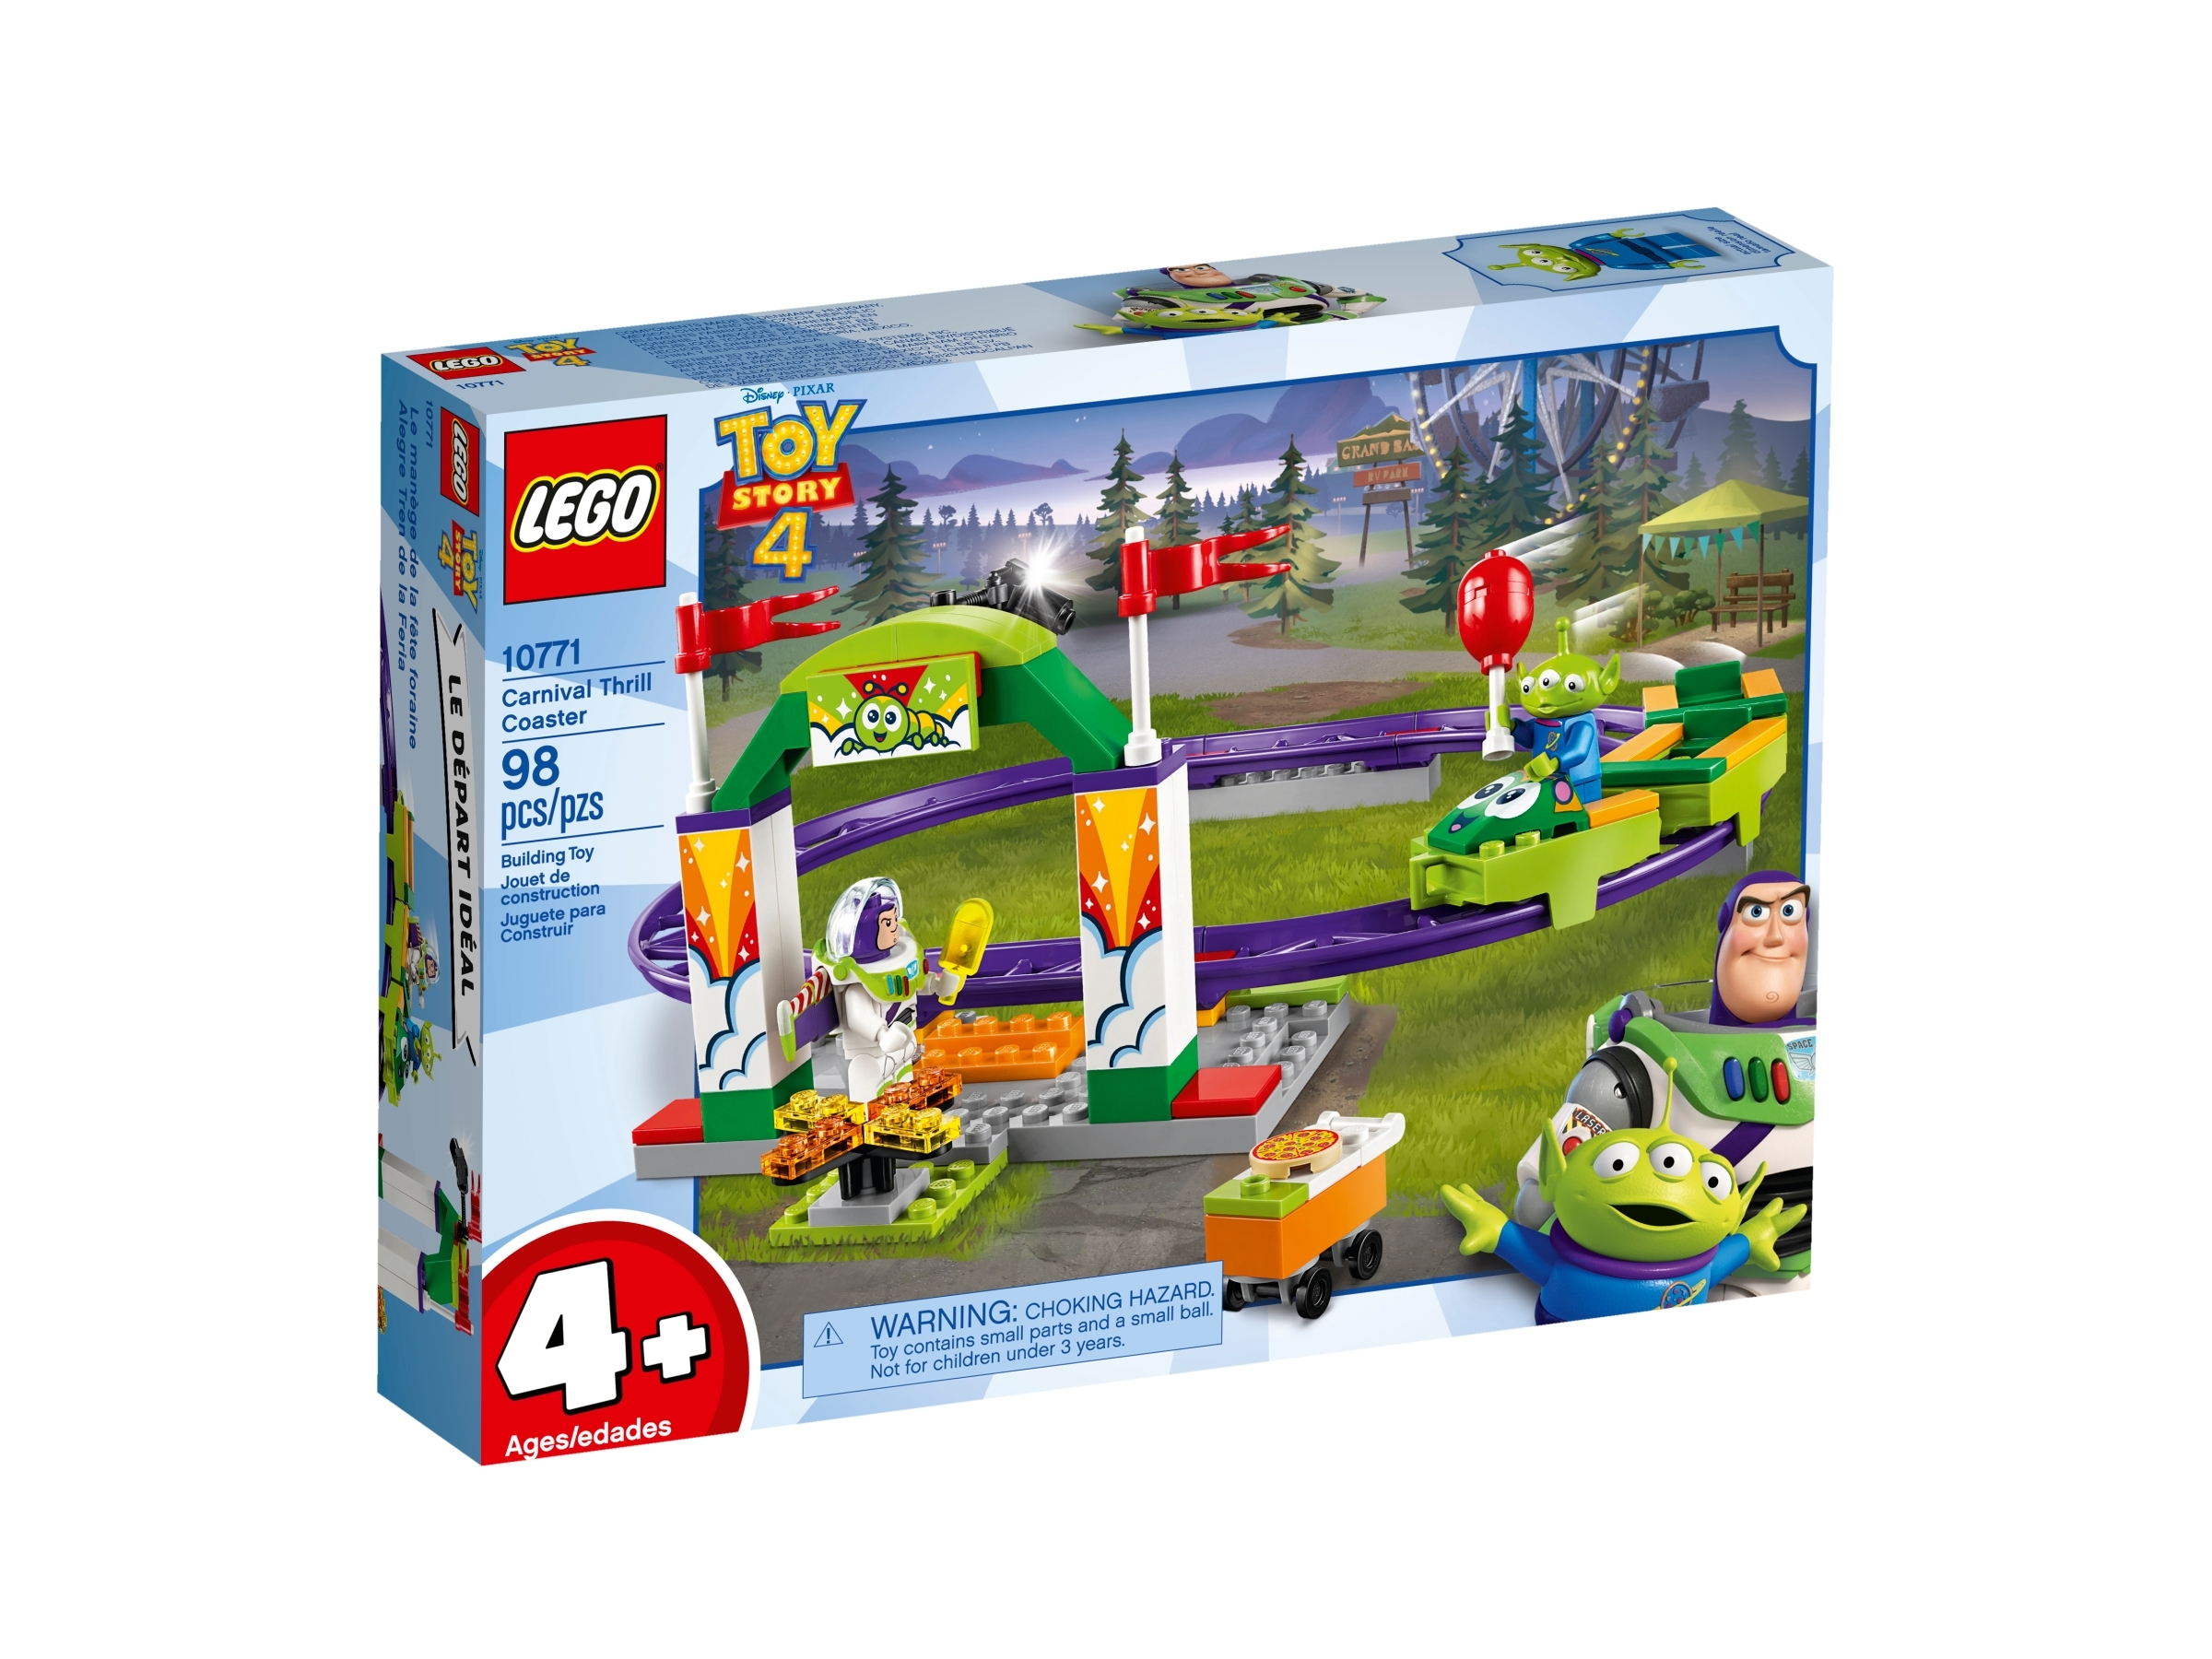 Lego 10771 Toy Story 4 Buzz Lightyear NEUF ET Neuf dans sa boîte